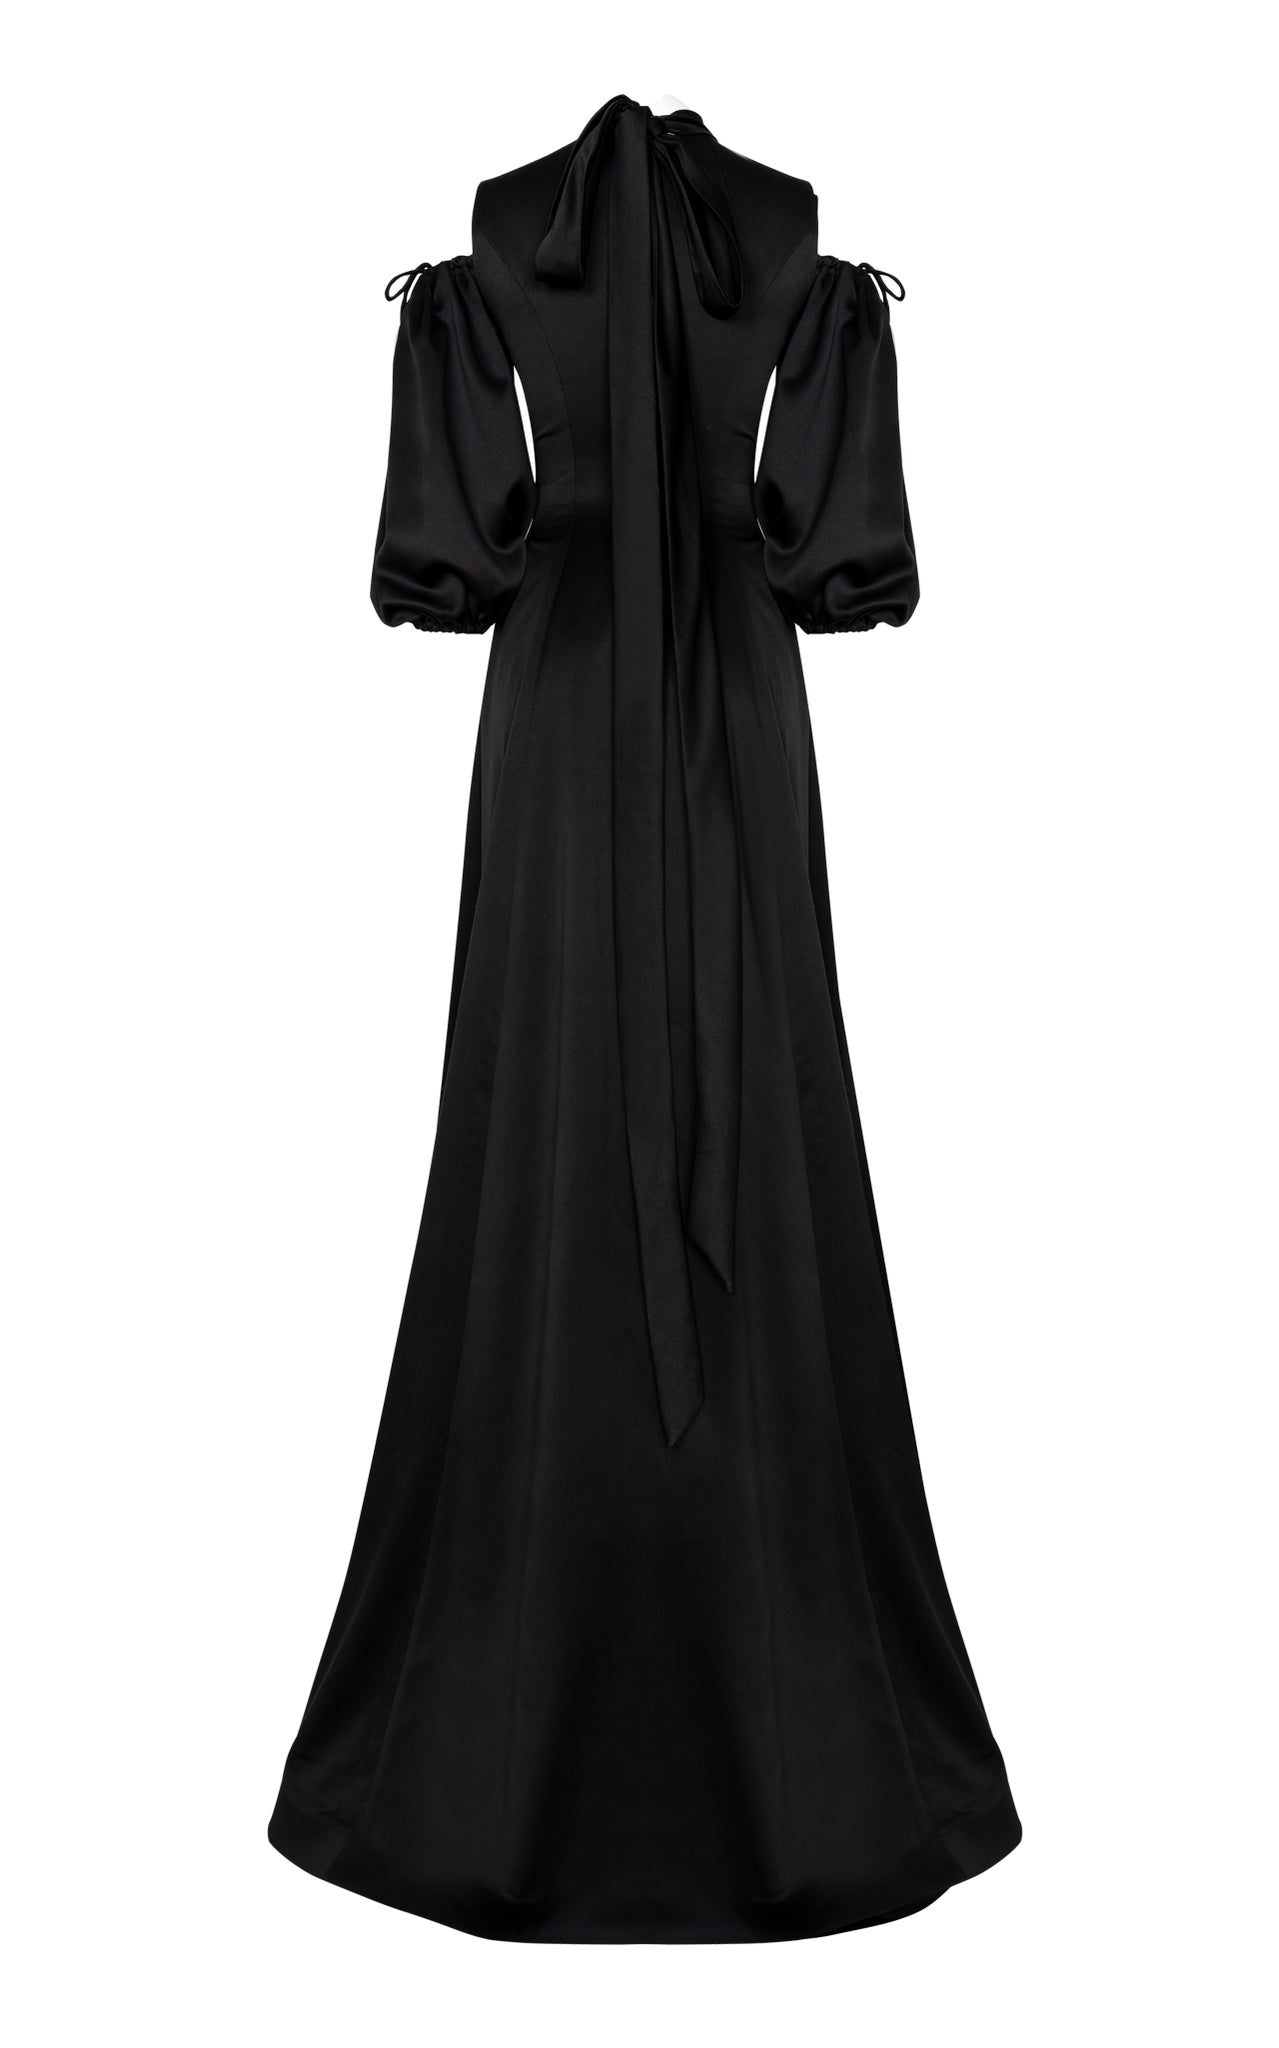 Black satin full length gown